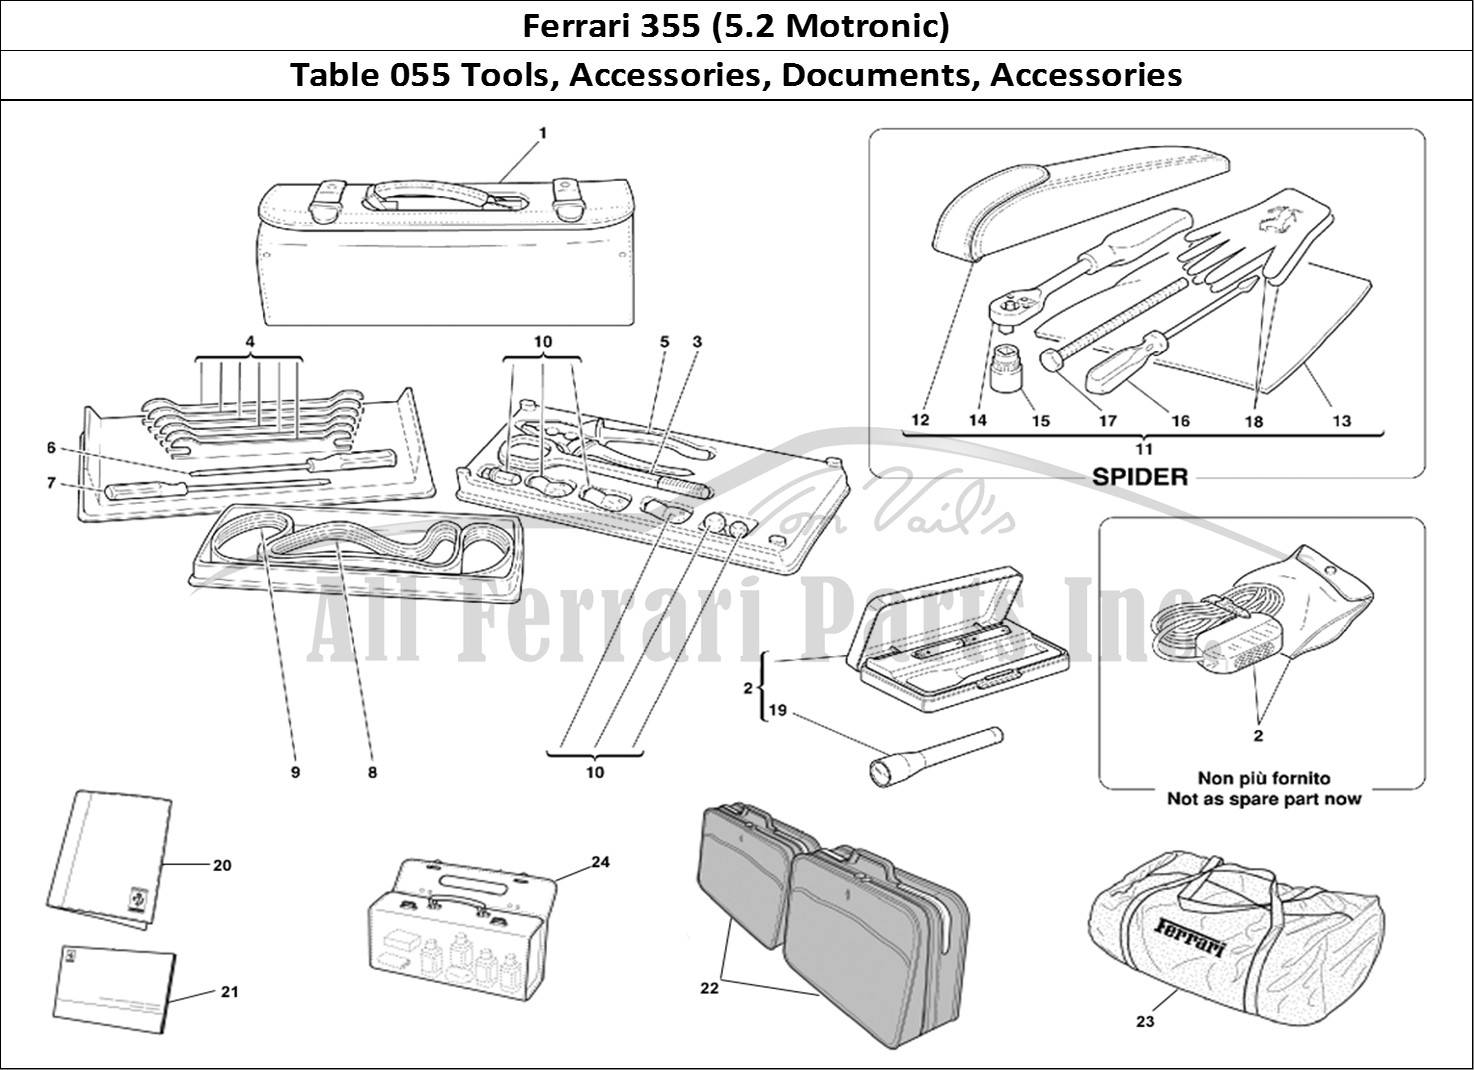 Ferrari Parts Ferrari 355 (5.2 Motronic) Page 055 Tools Equipment - Documen